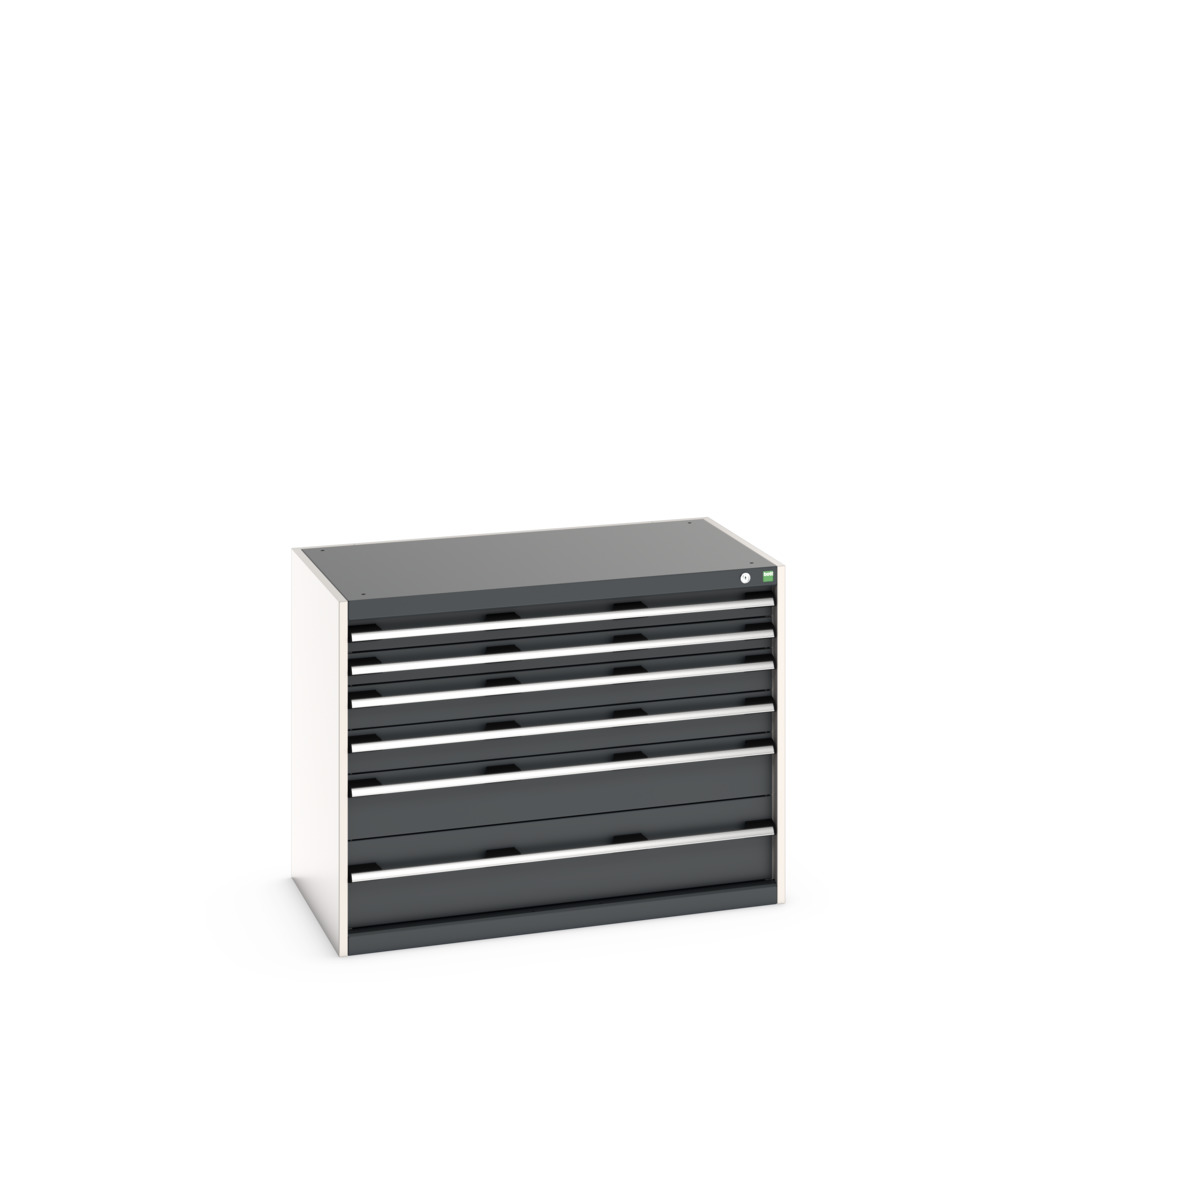 40021192.19V - cubio drawer cabinet